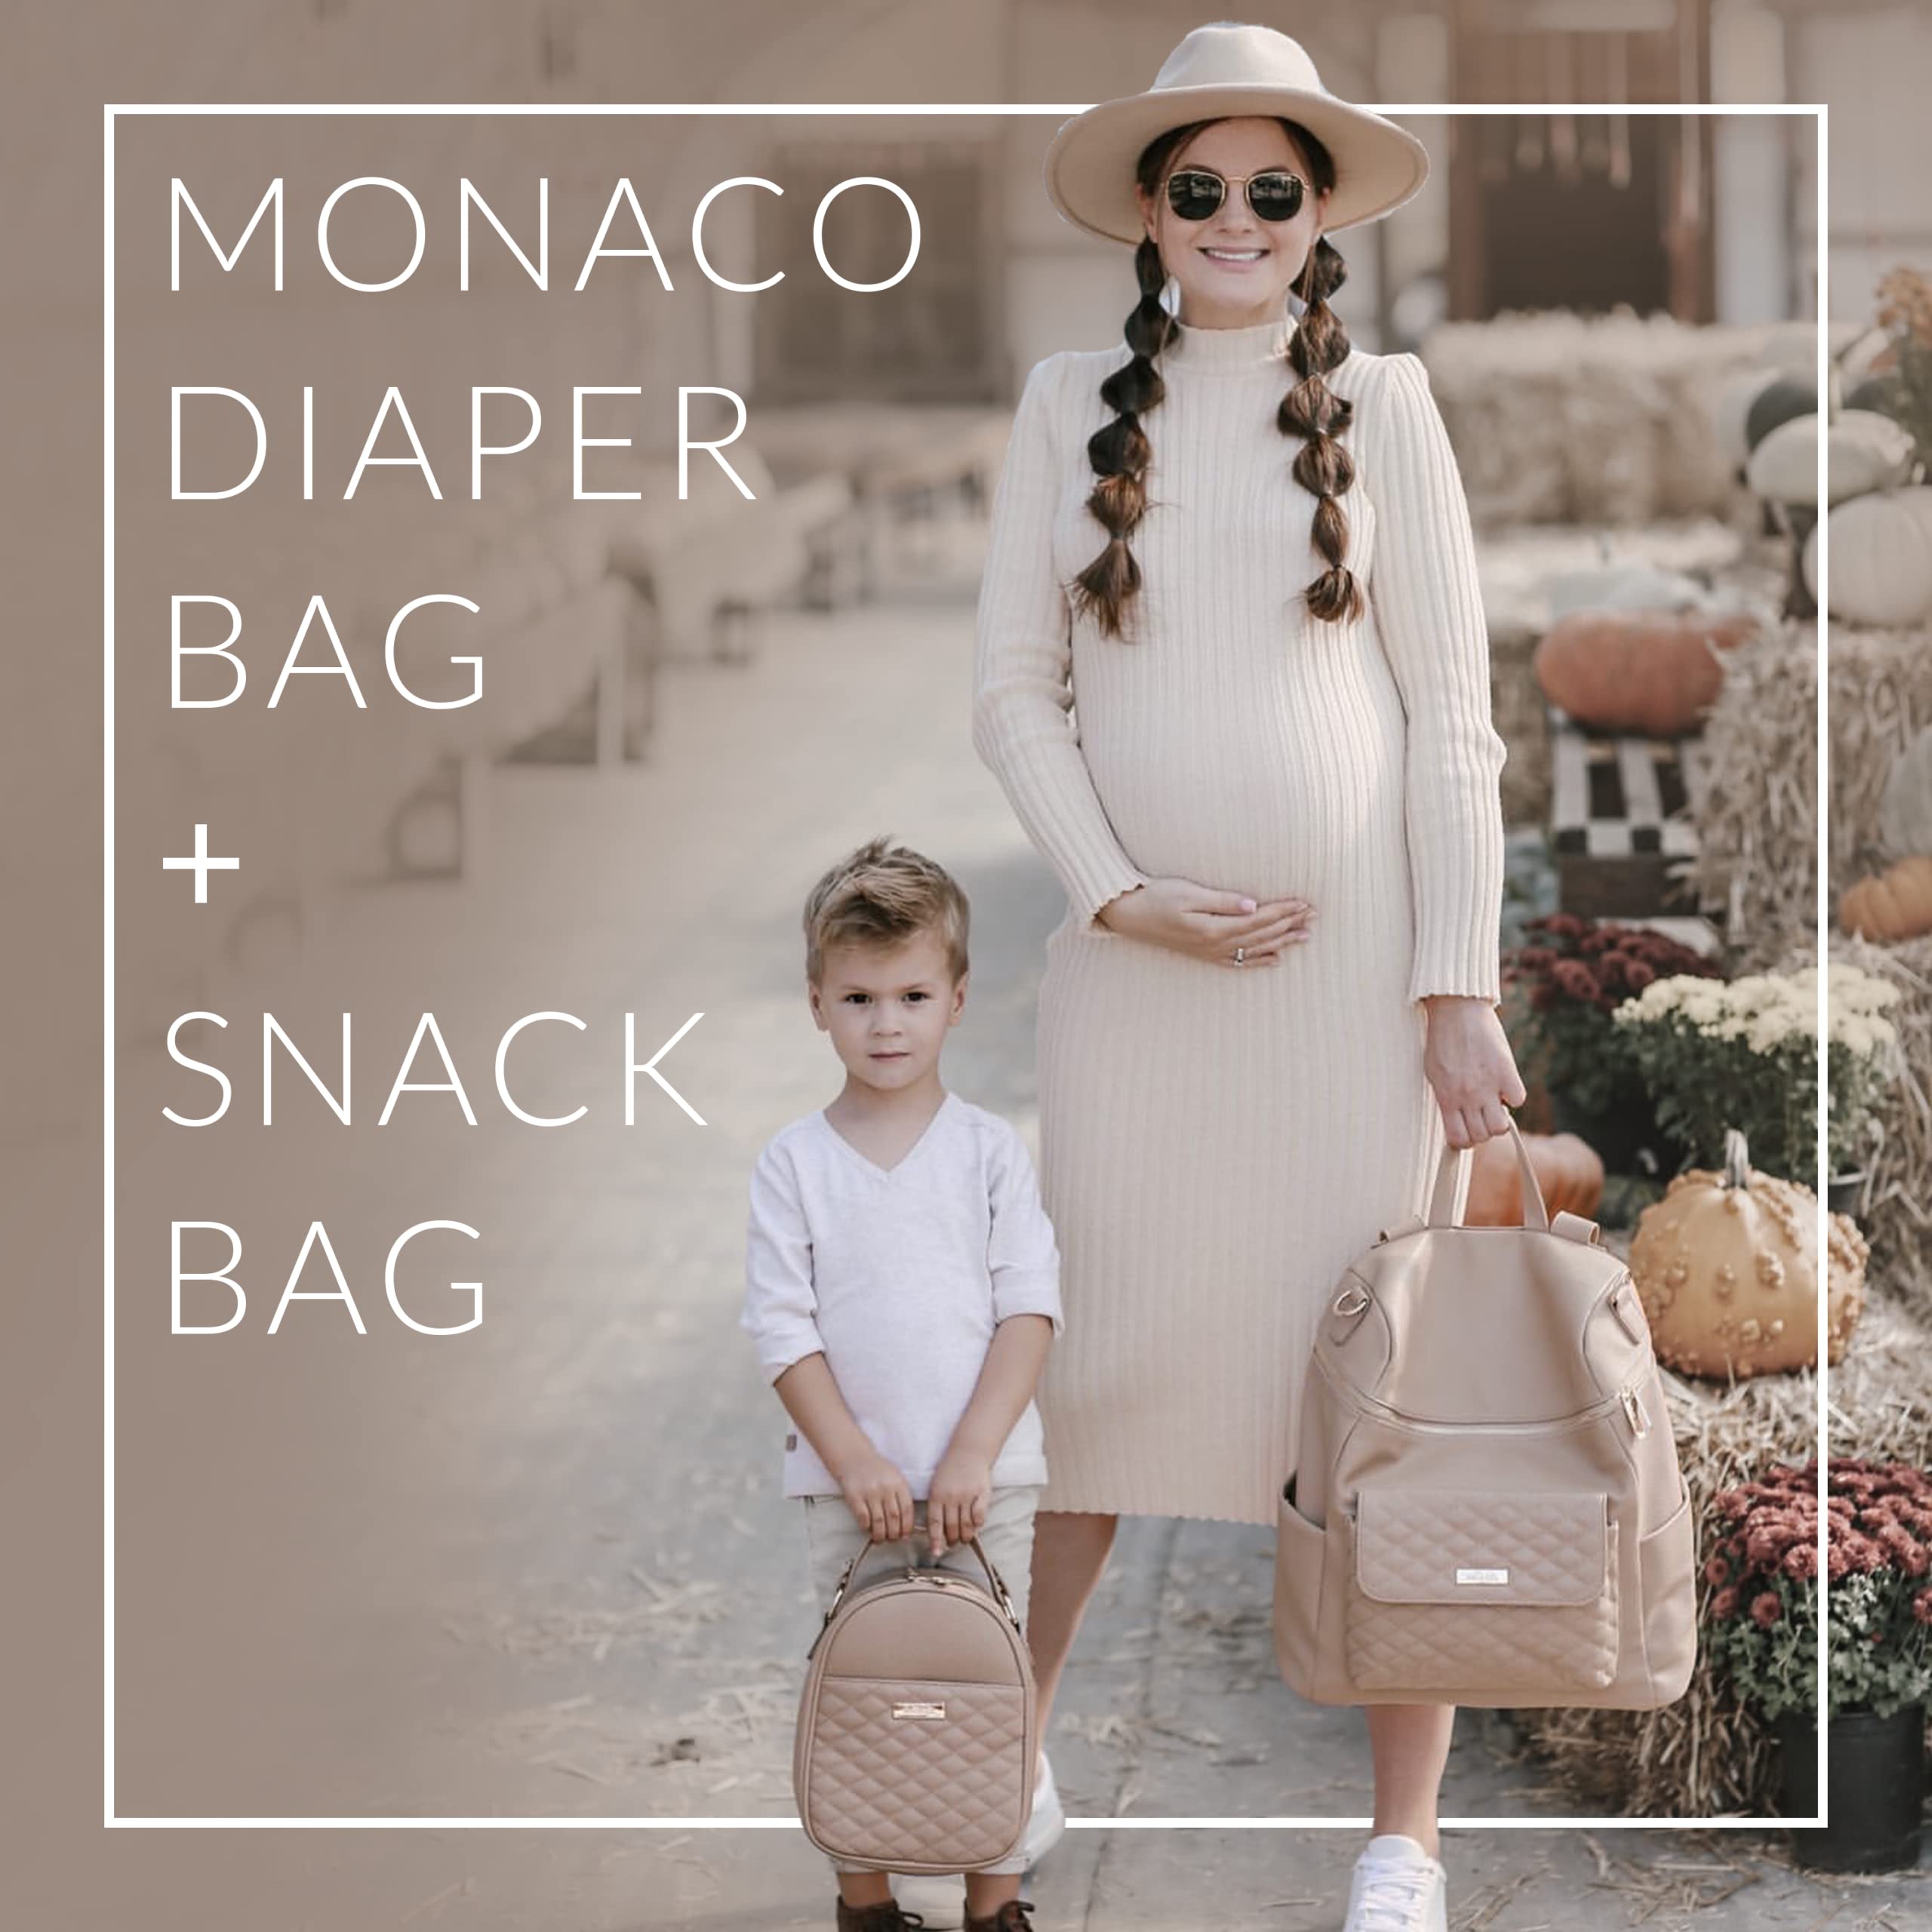 Monaco Diaper Bag + Snack Bag by Luli Bebe - Chic Vegan Leather (Ebony Black)